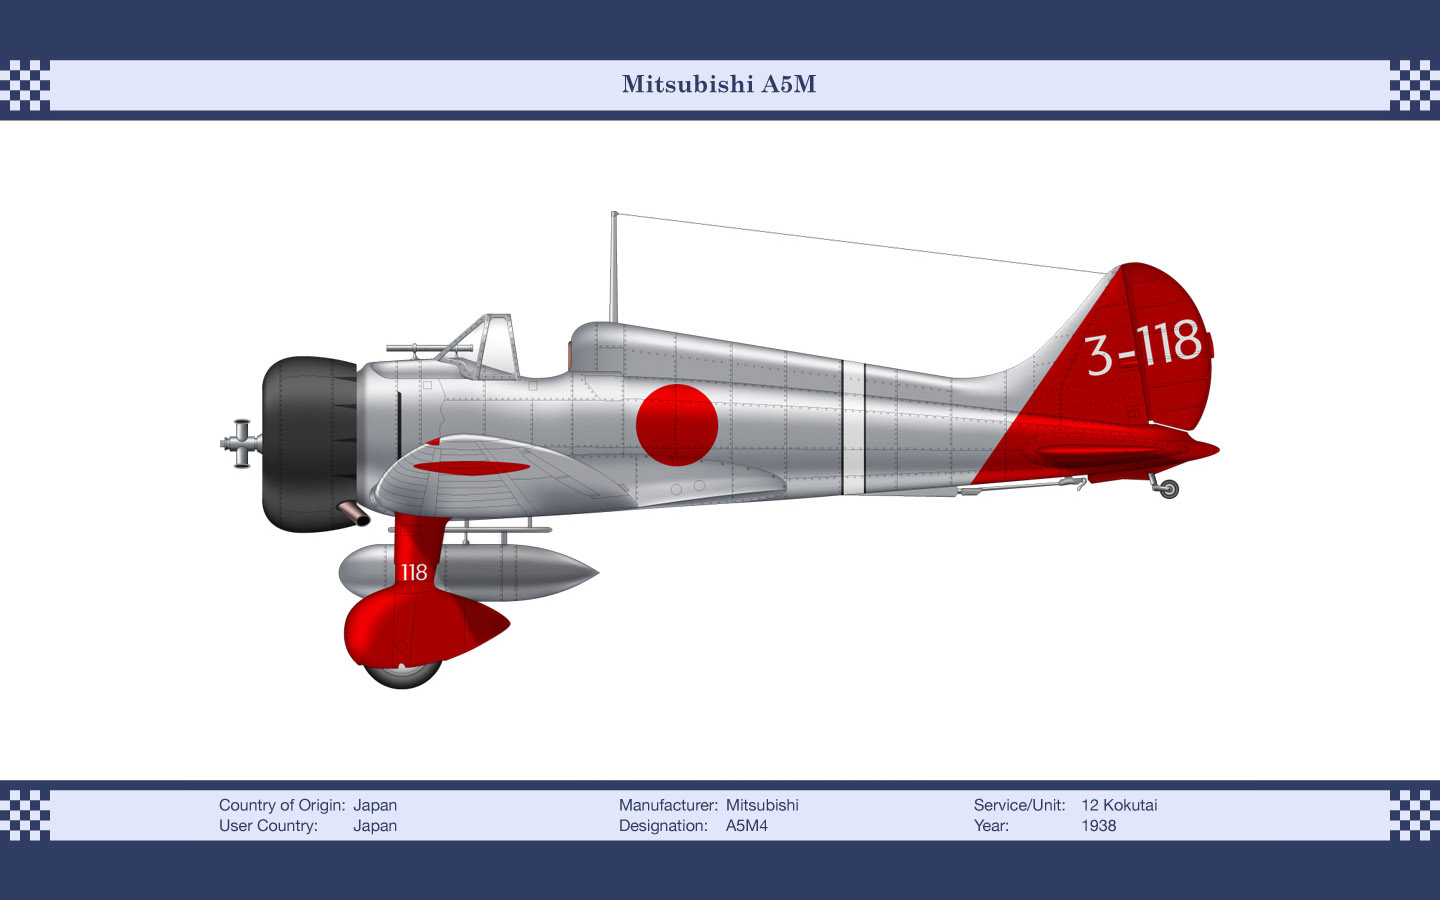 Mitsubishi A5M 1920 x 1080 HD Wallpaper